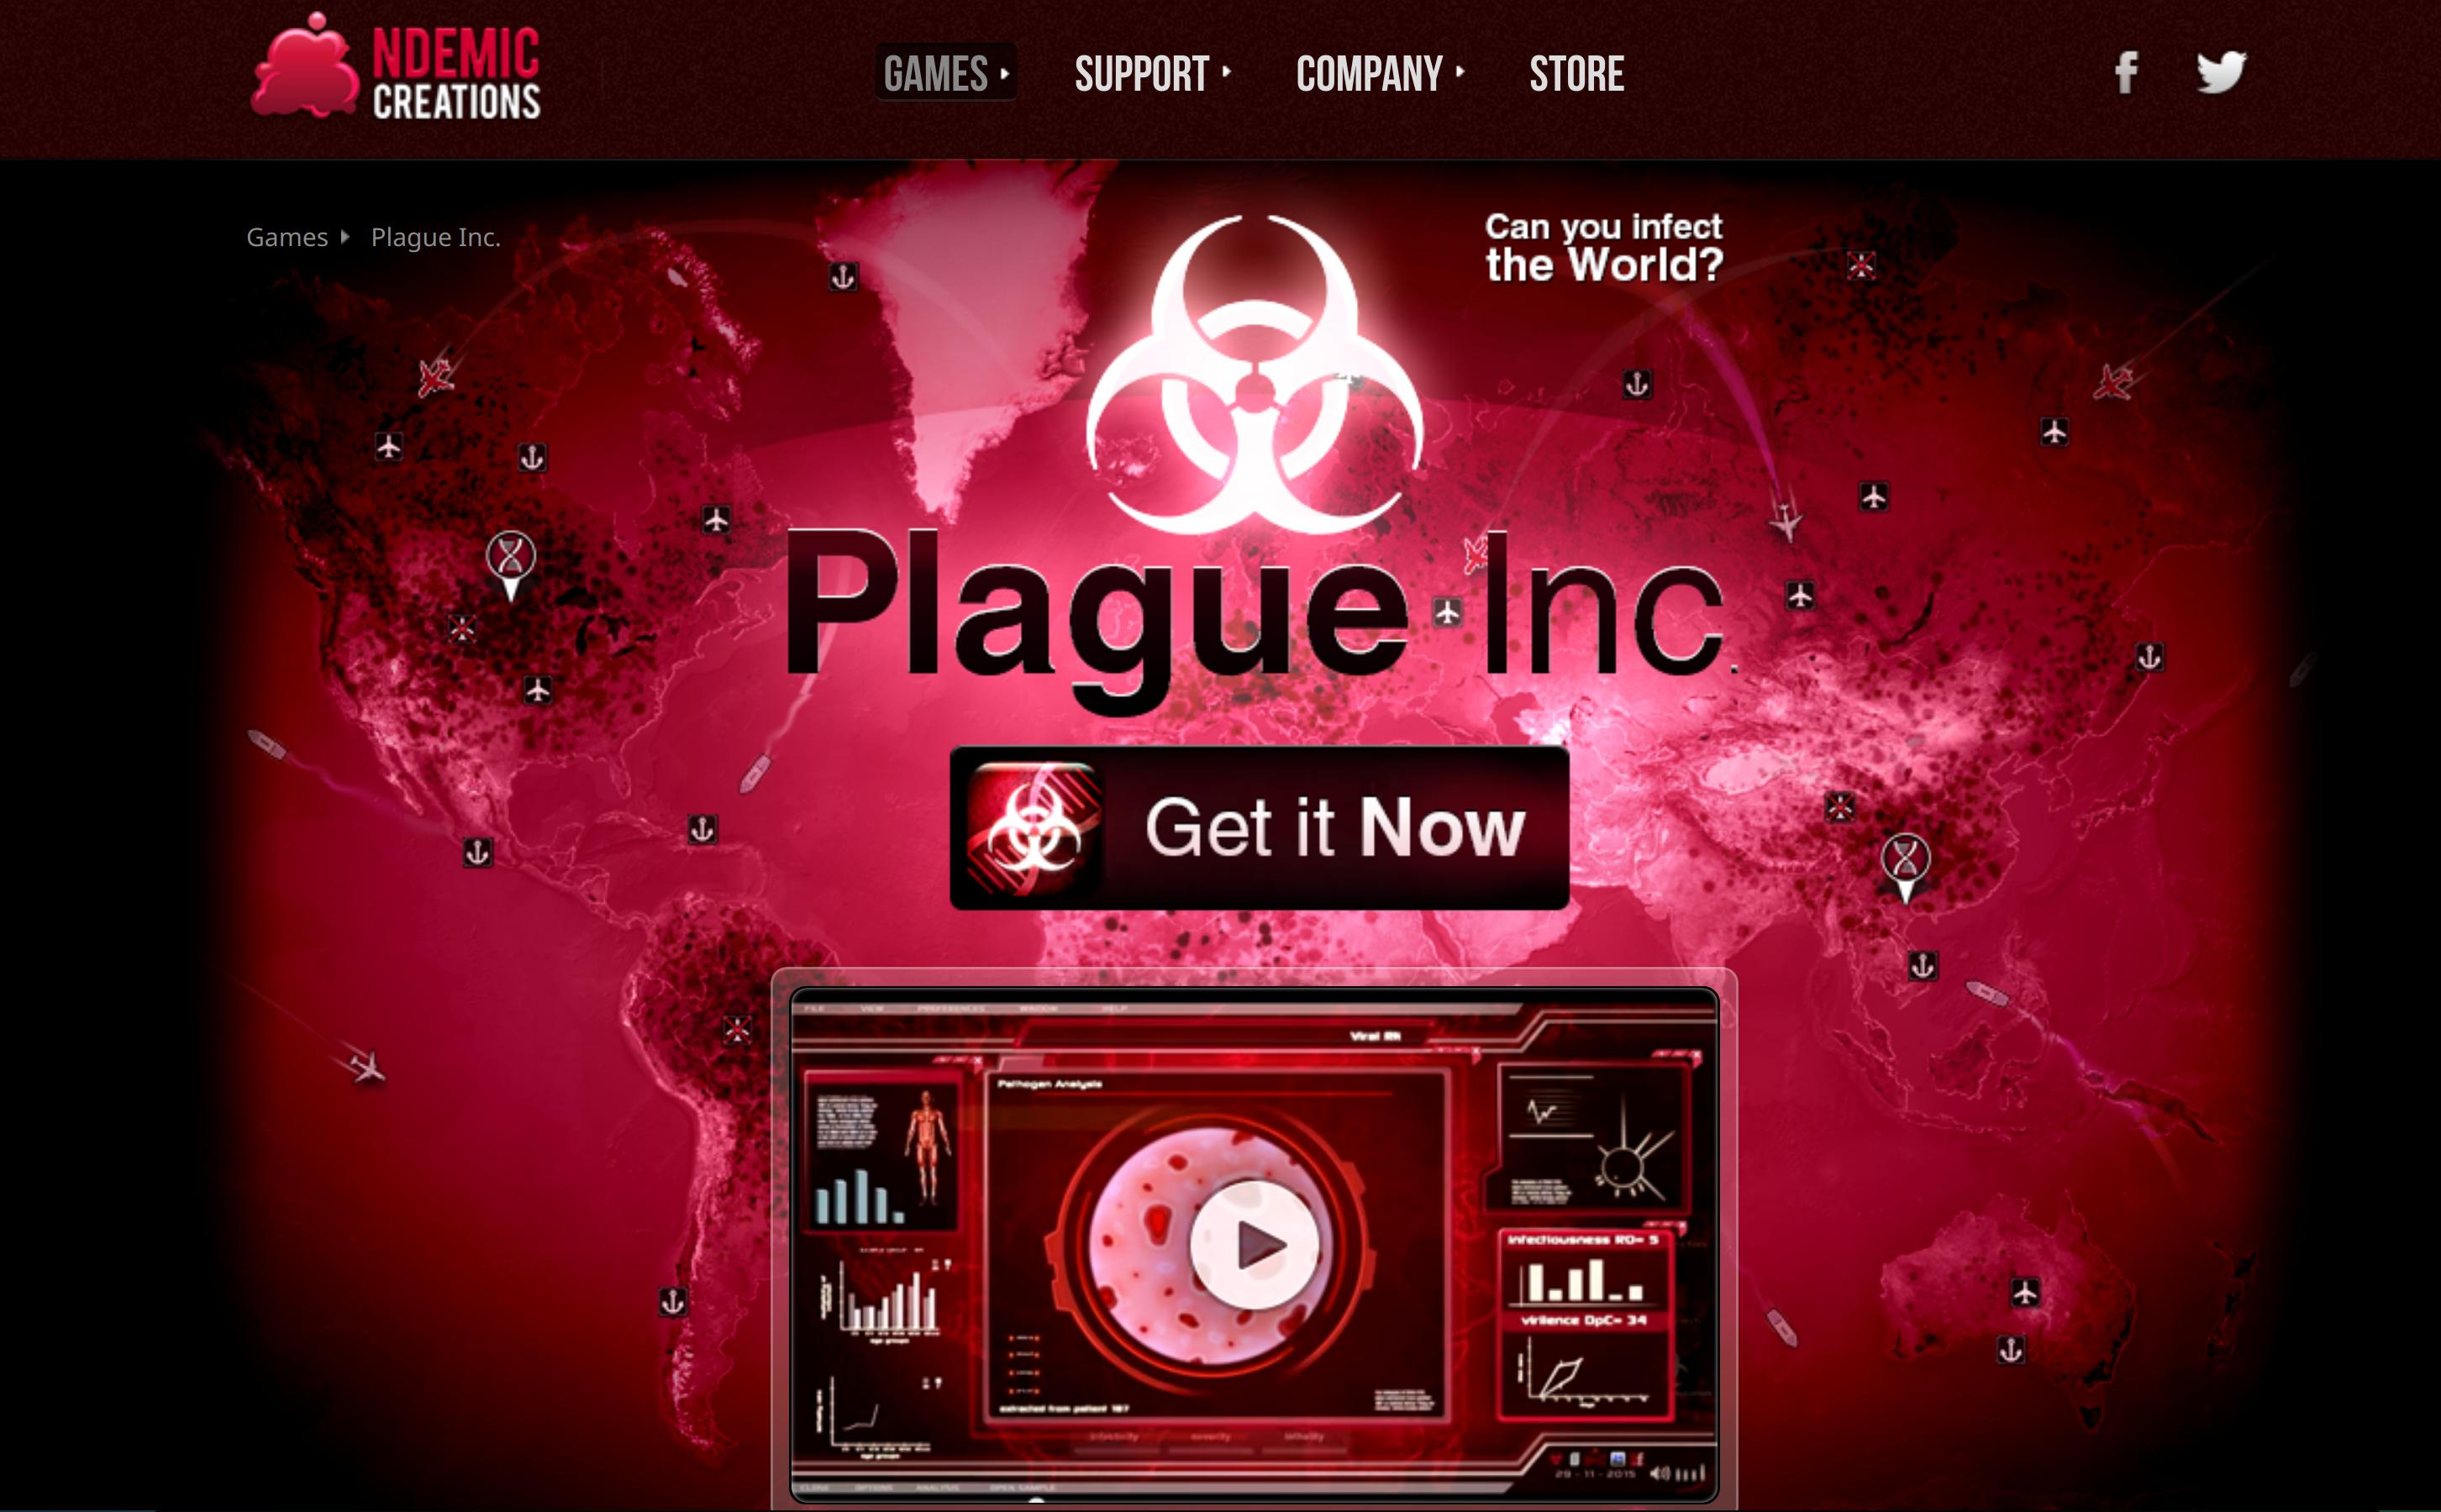 Pandemie sorgt für hohe Zugriffszahlen: Plague Inc. steht bei mobilen Spielern in der Corona-Krise hoch im Kurs